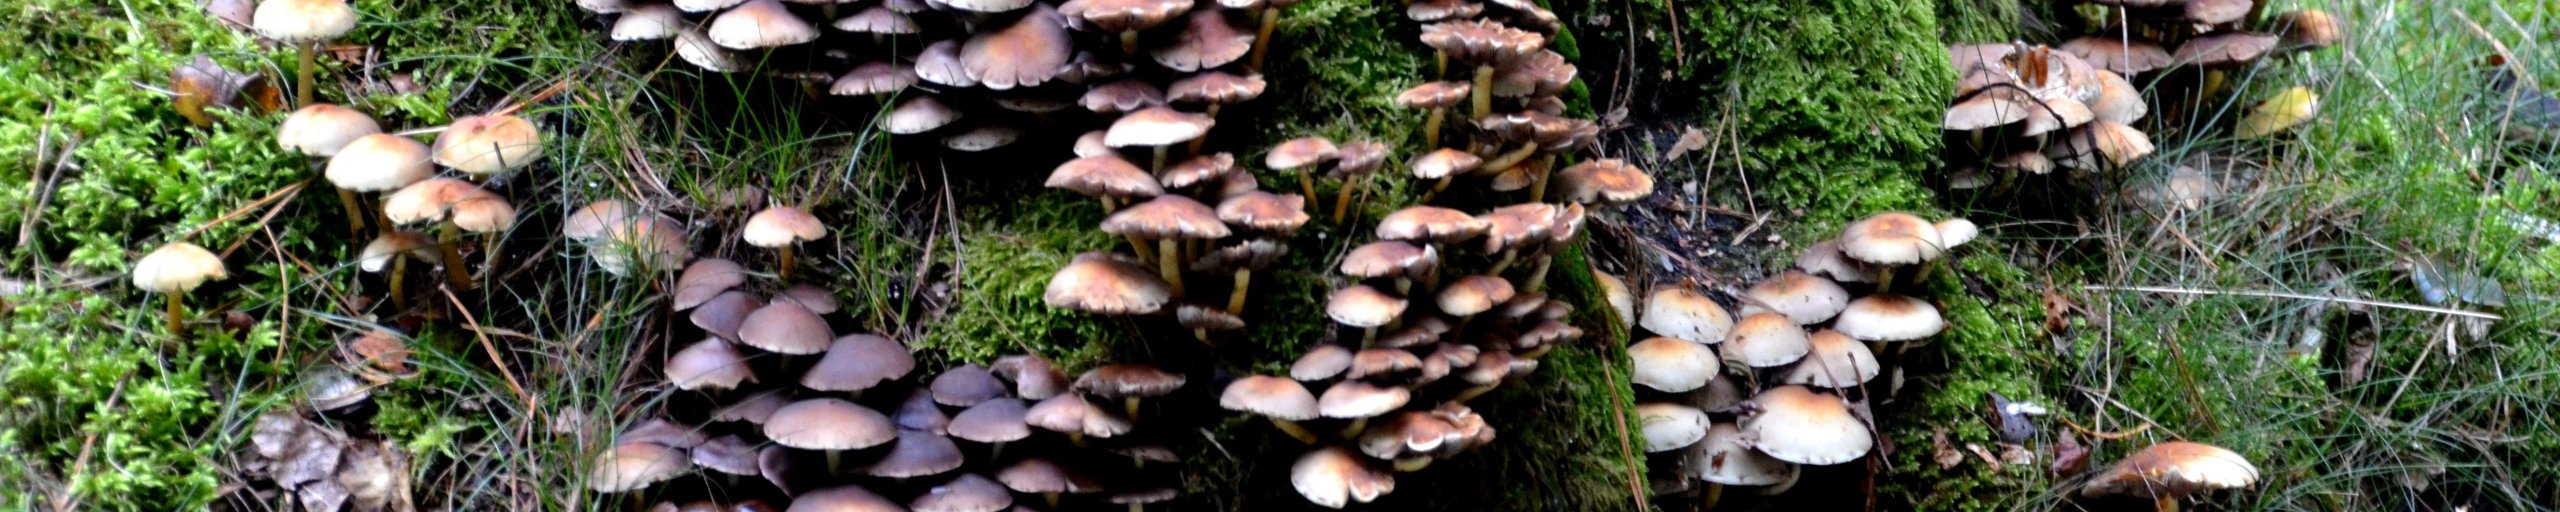 paddenstoelen bij een boom